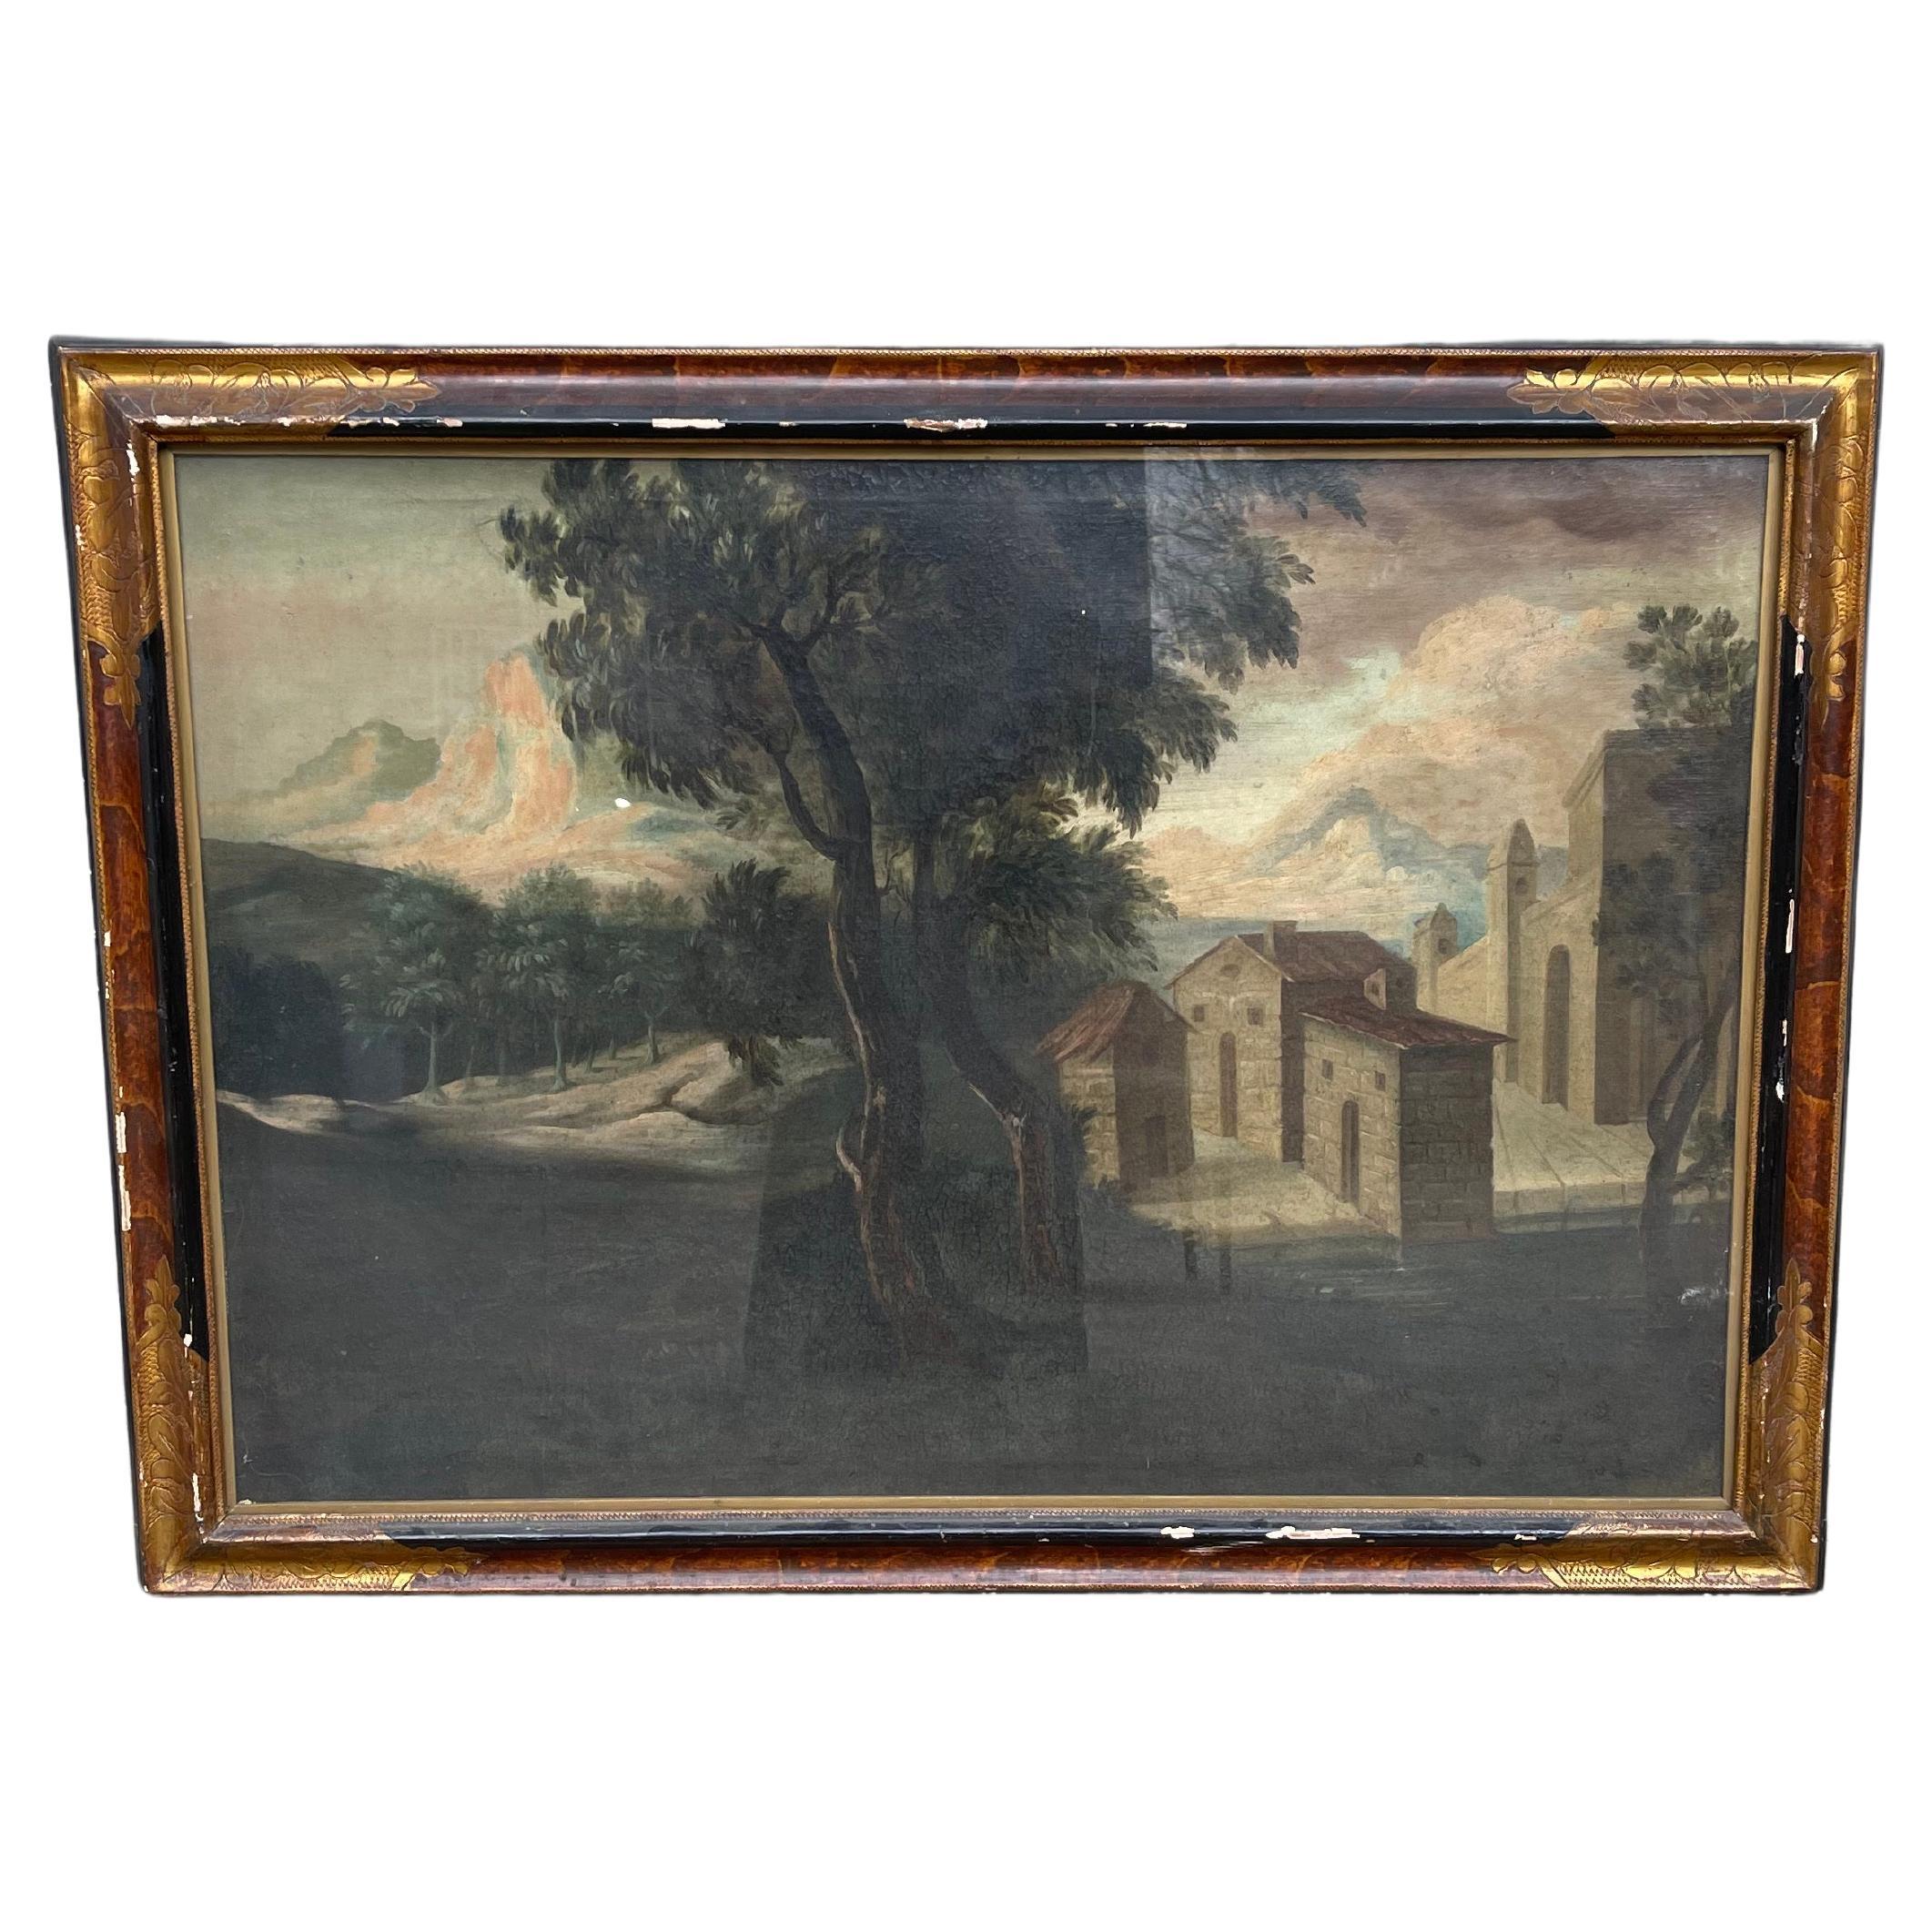 antico paesaggio -  scuola romana -  olio su tela - fine 18 secolo - dipinto